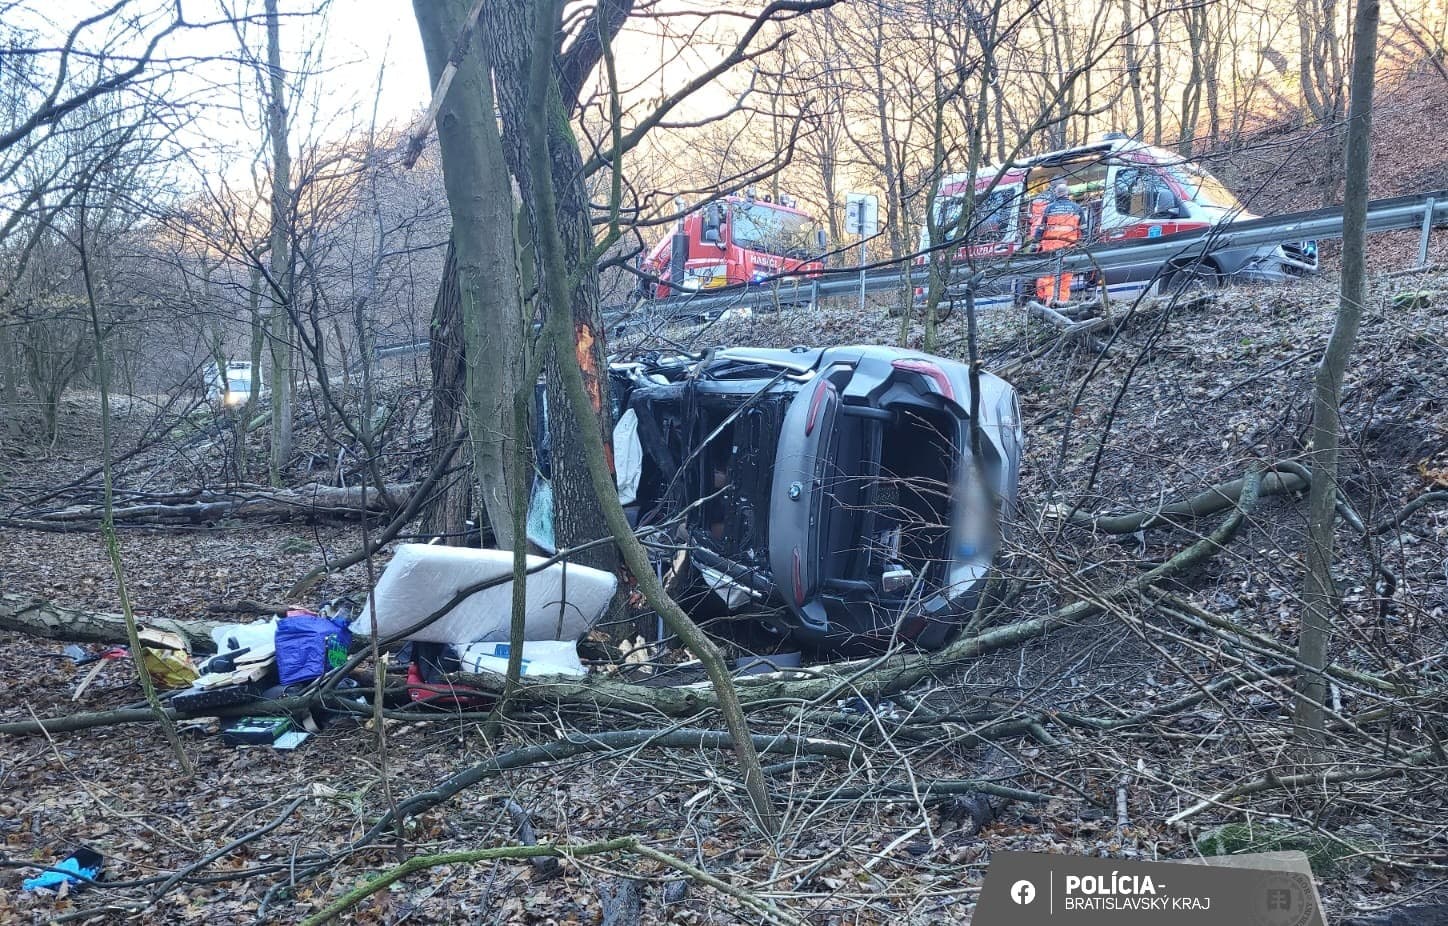 Tragikus baleset: lerepült az útról és fának csapódott egy BMW, a sofőr a helyszínen meghalt